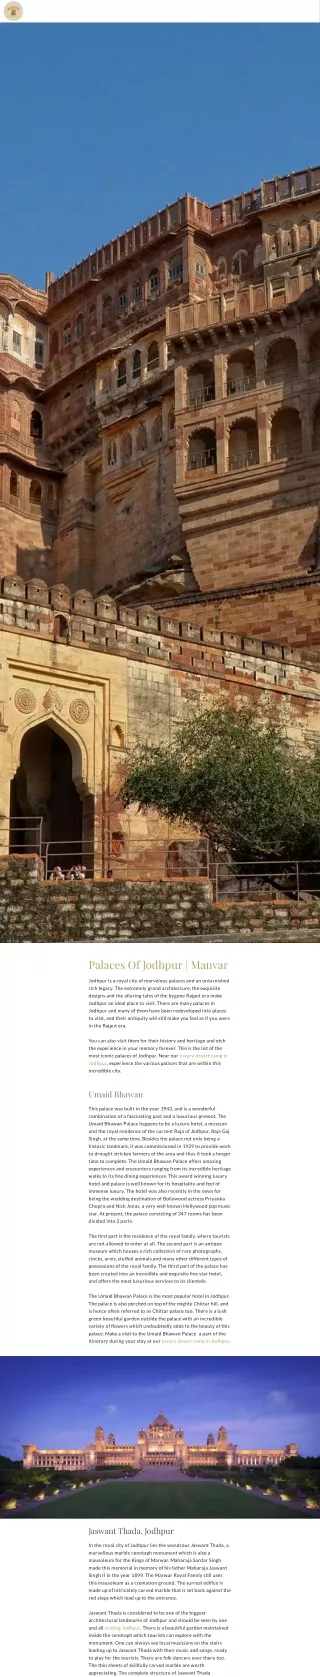 Palaces Of Jodhpur | Manvar